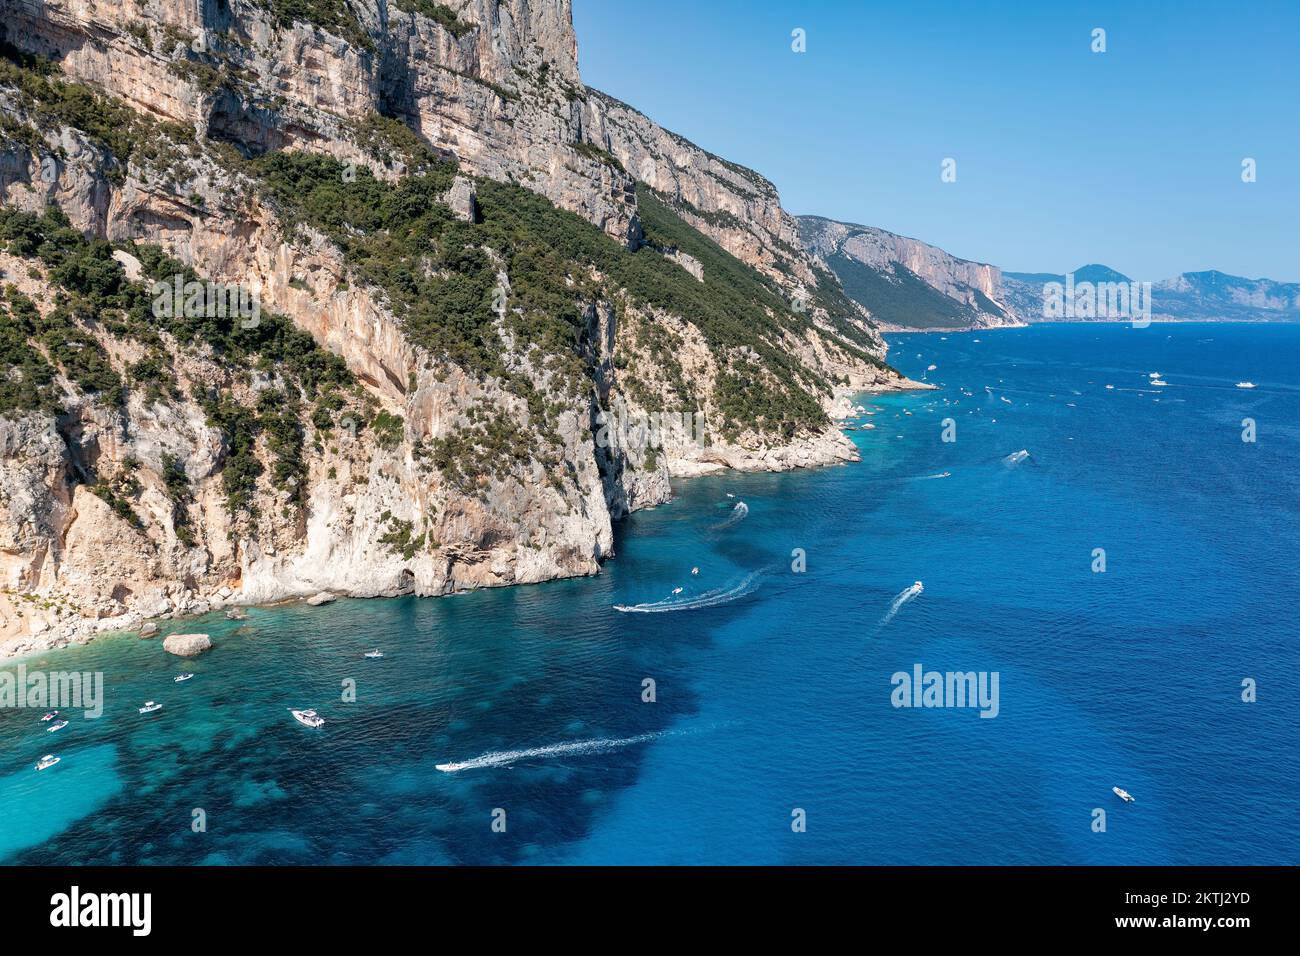 Die Touristenboote entlang der zerklüfteten, von Klippen gesäumten Küste Ostsardiniens im Golfo di Orosei in der Nähe der malerischen Küstenstadt Cala Gonone aus der Vogelperspektive. Stockfoto